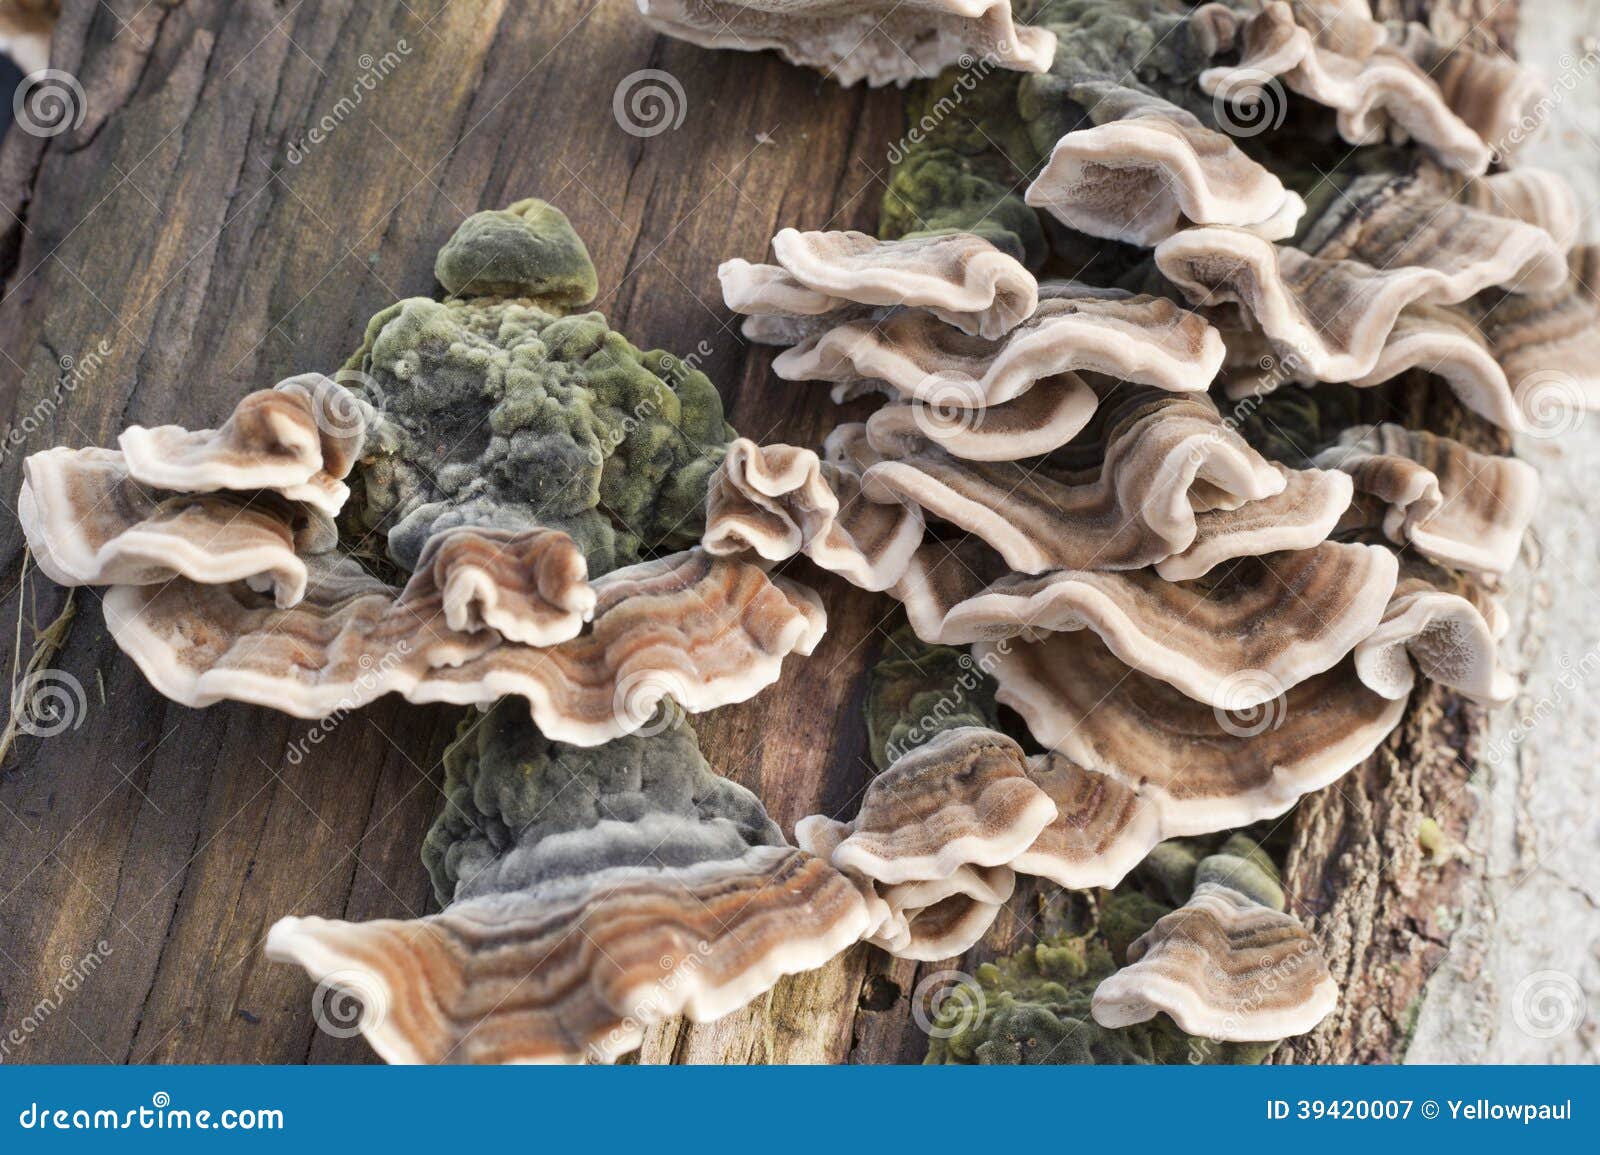 photographie stock libre de droits tronc d arbre couvert de champignon image